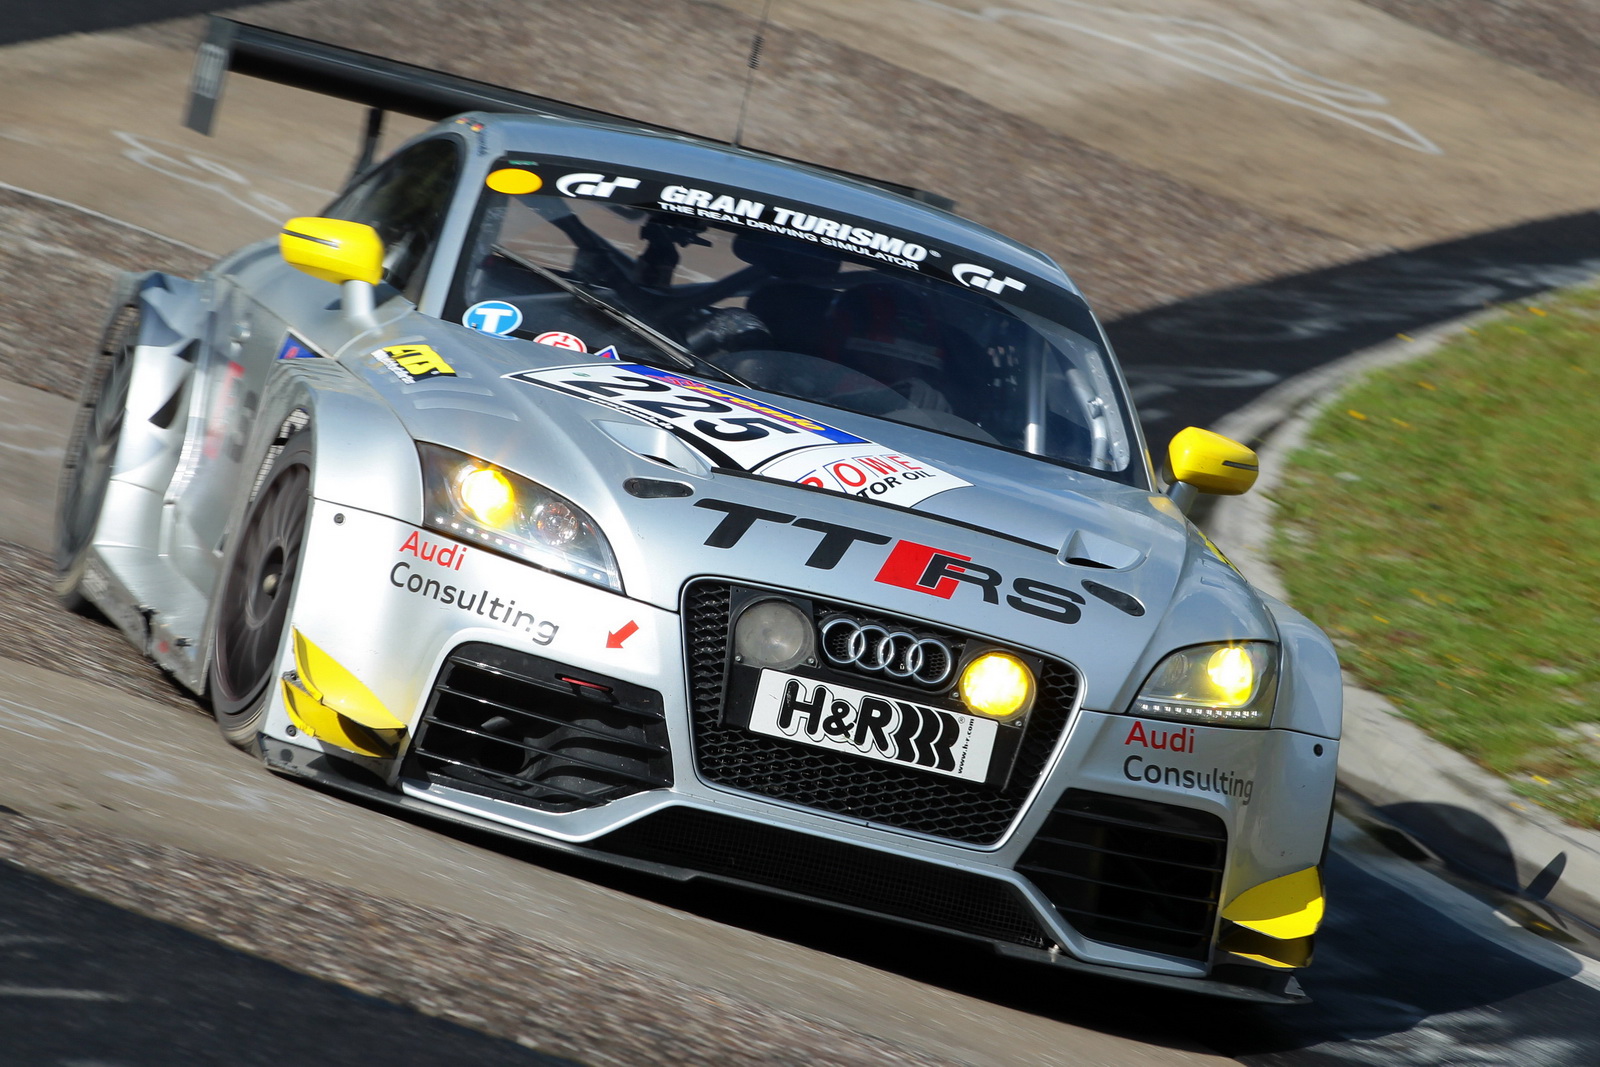 Audi TT RS Racer